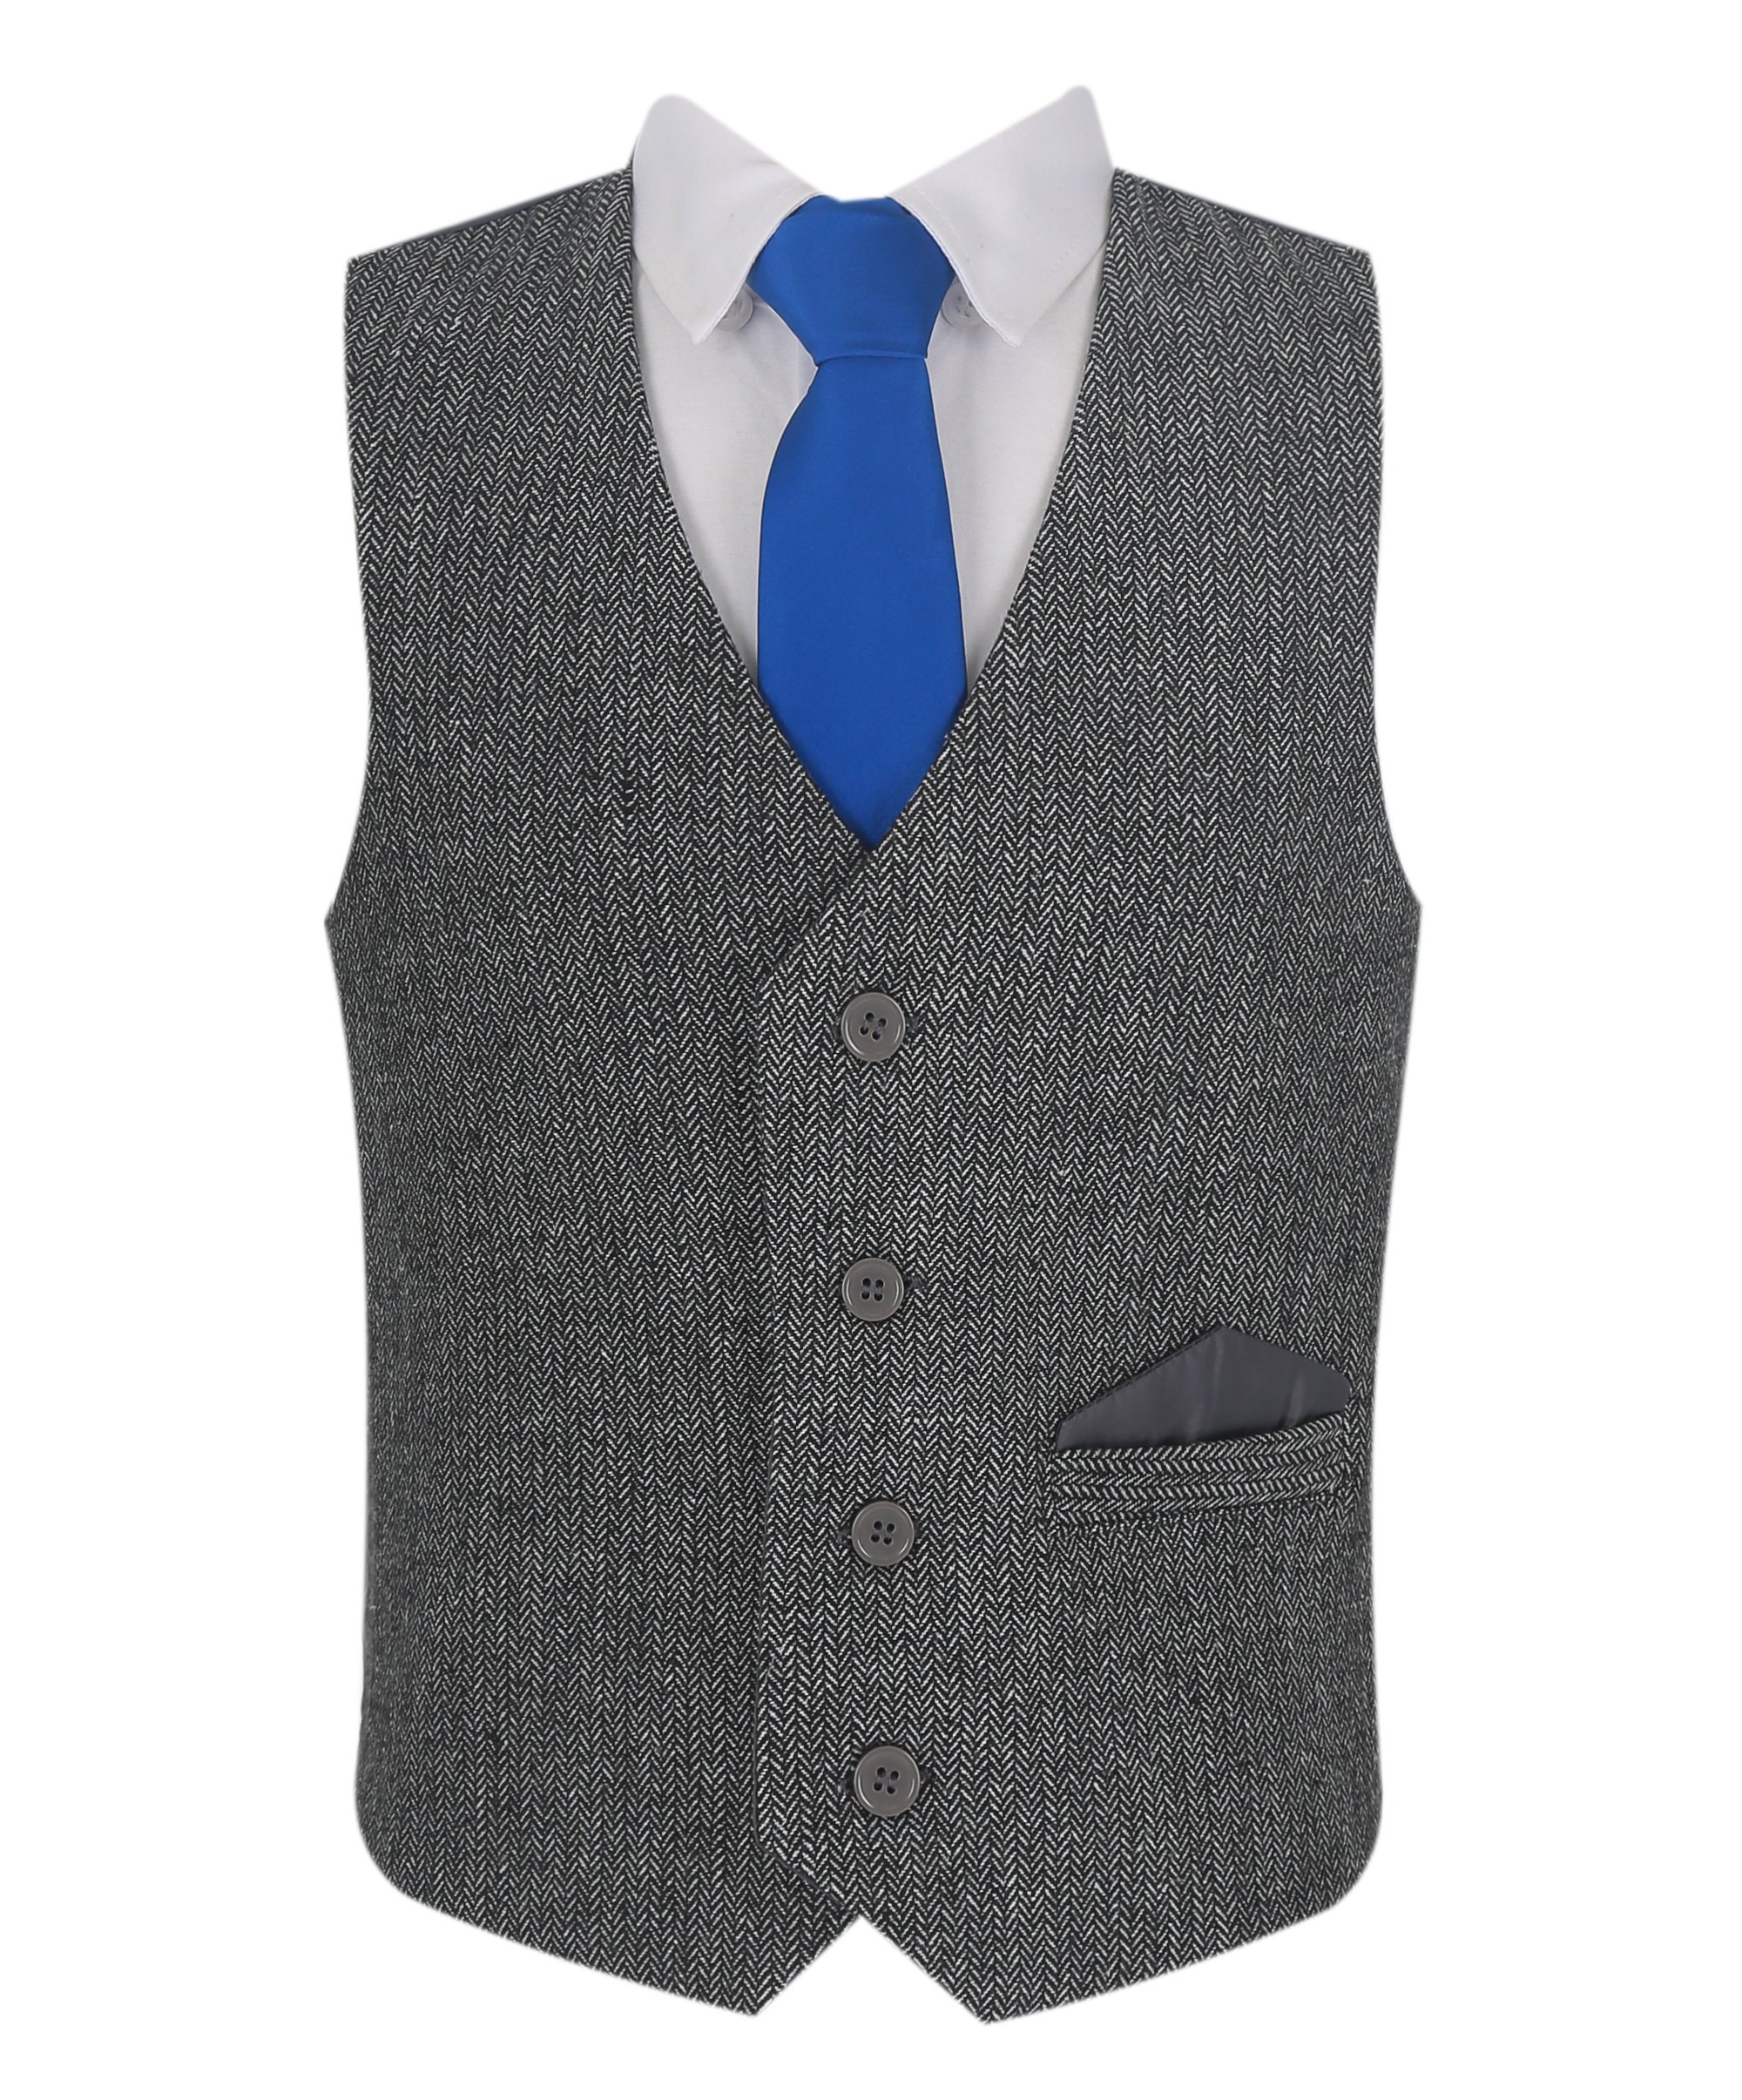 Boys Herringbone Tweed Waistcoat Suit Set